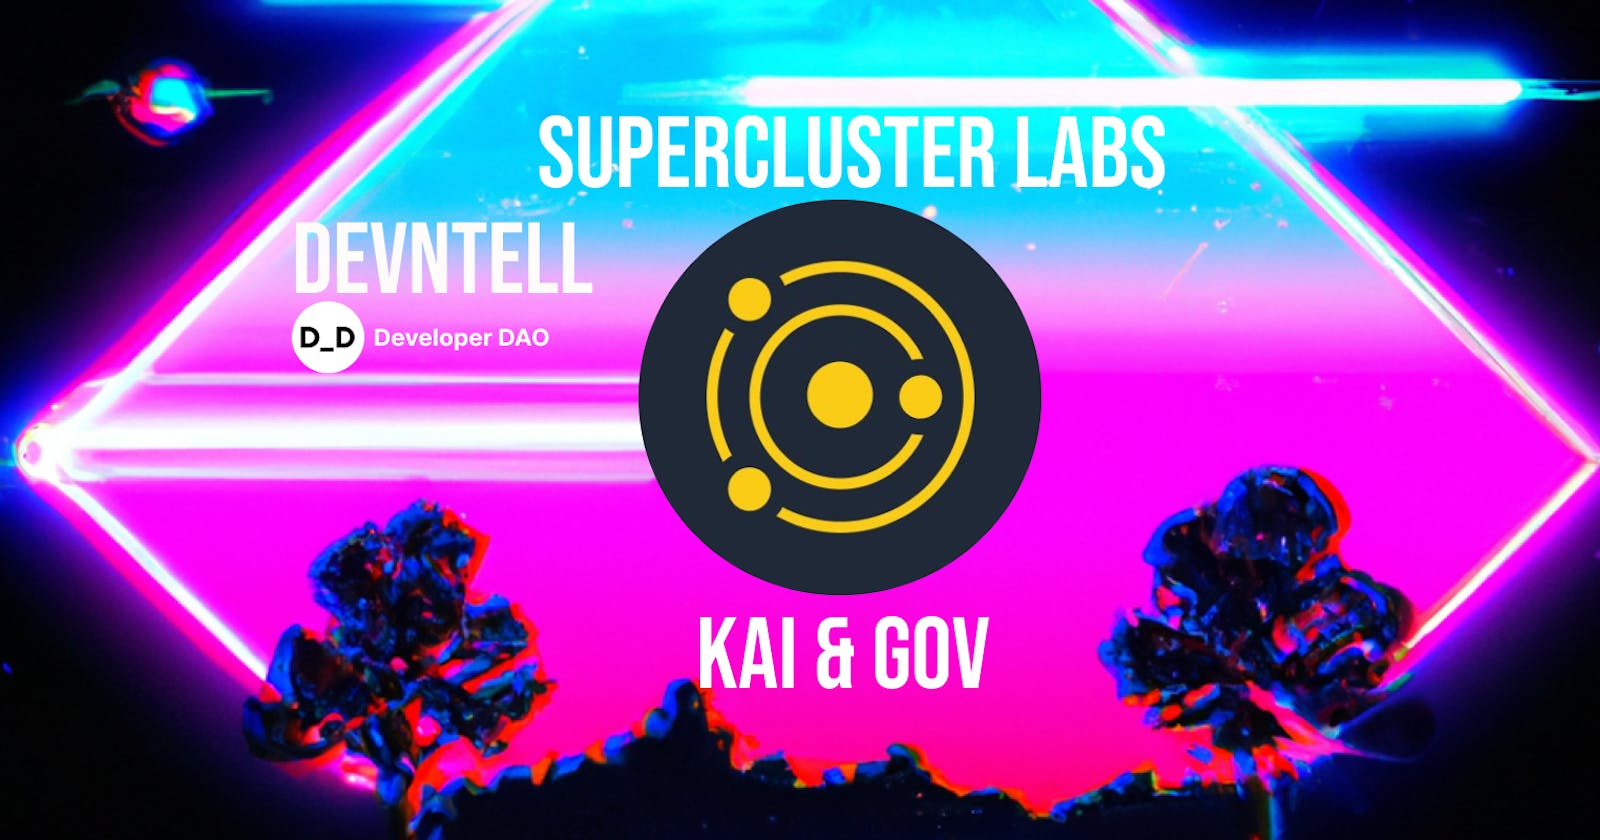 DevNTell - Supercluster